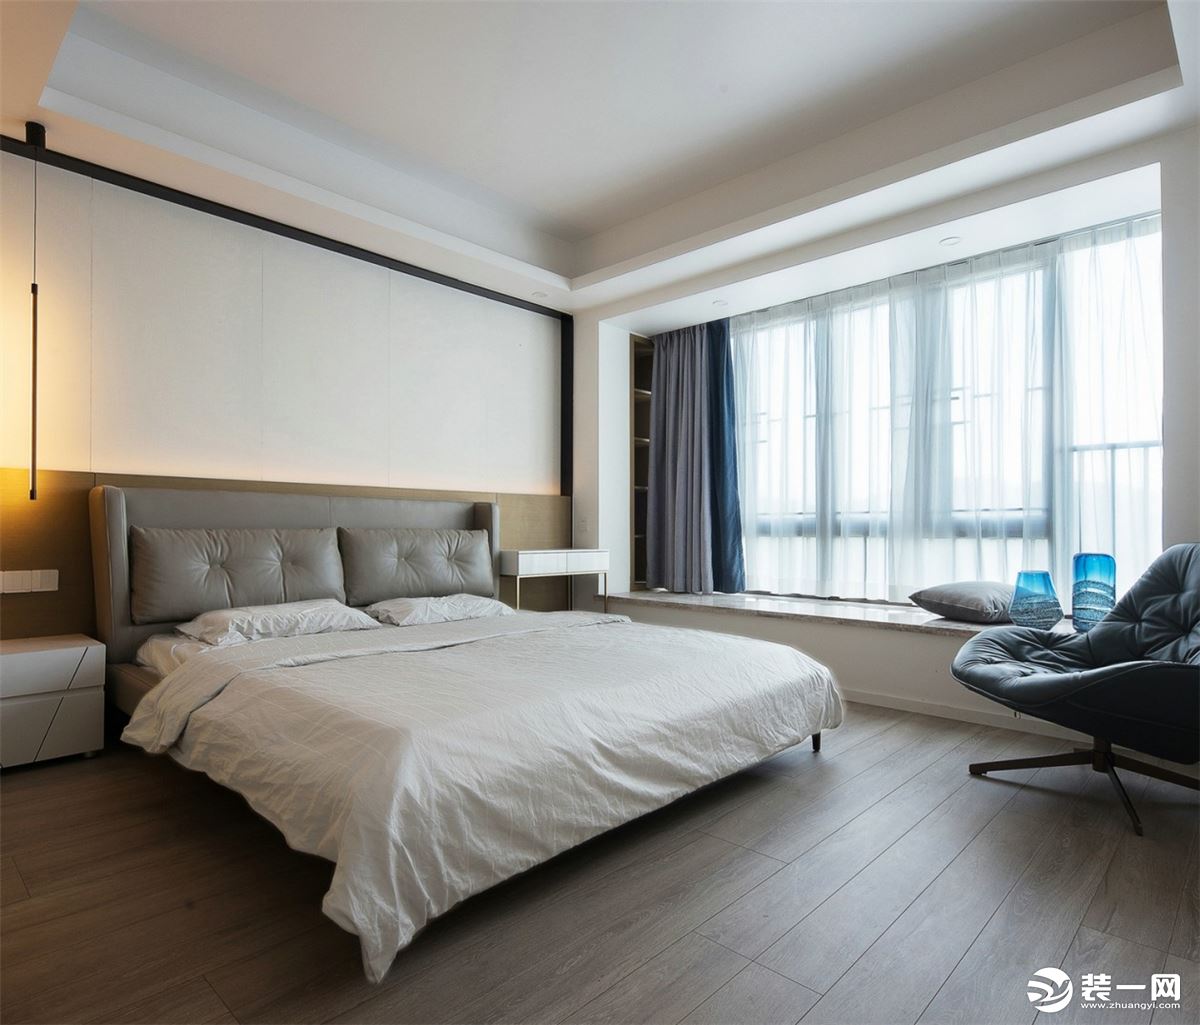 随动线进入卧室空间，氛围逐渐趋向平和。床头背景墙由米白色硬包和木色饰面组合而成，四周是黑色的细边铁艺